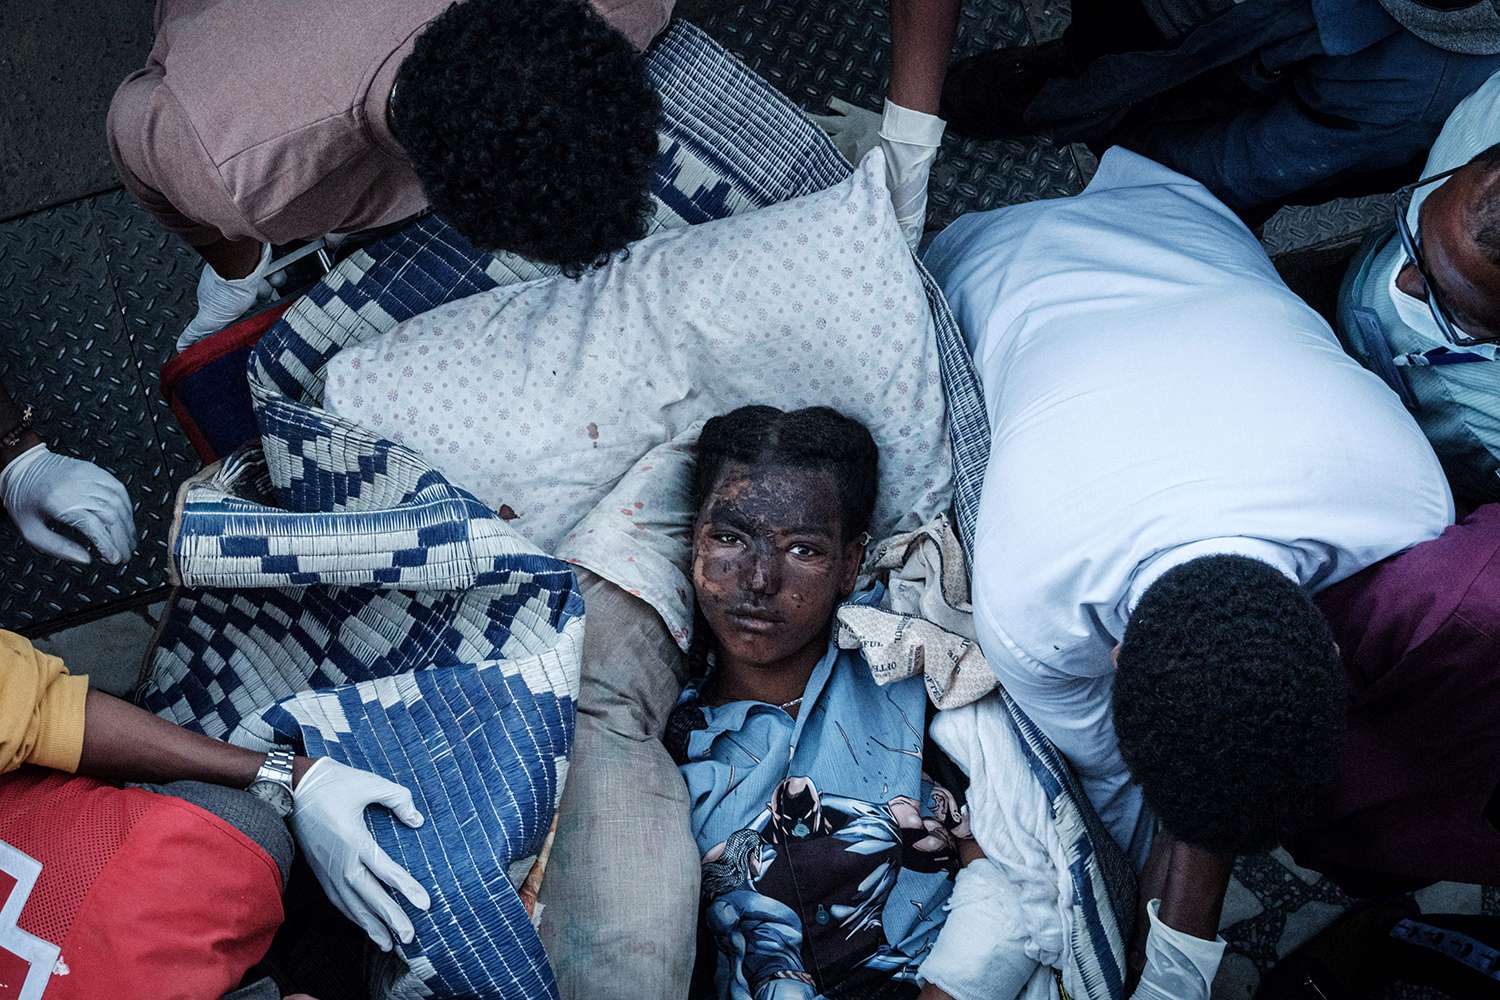 Một thường dân bị thương nặng ở Togoga được đưa đến bệnh viện ở Mekele, thủ phủ Tigray vào ngày 23/6/2021, một ngày sau khi xảy ra vụ không kích chết người nhắm vào một khu chợ nằm phía Bắc Tigray, Ethiopia. Ảnh: YASUYOSHI CHIBA/AFP VIA GETTY IMAGES